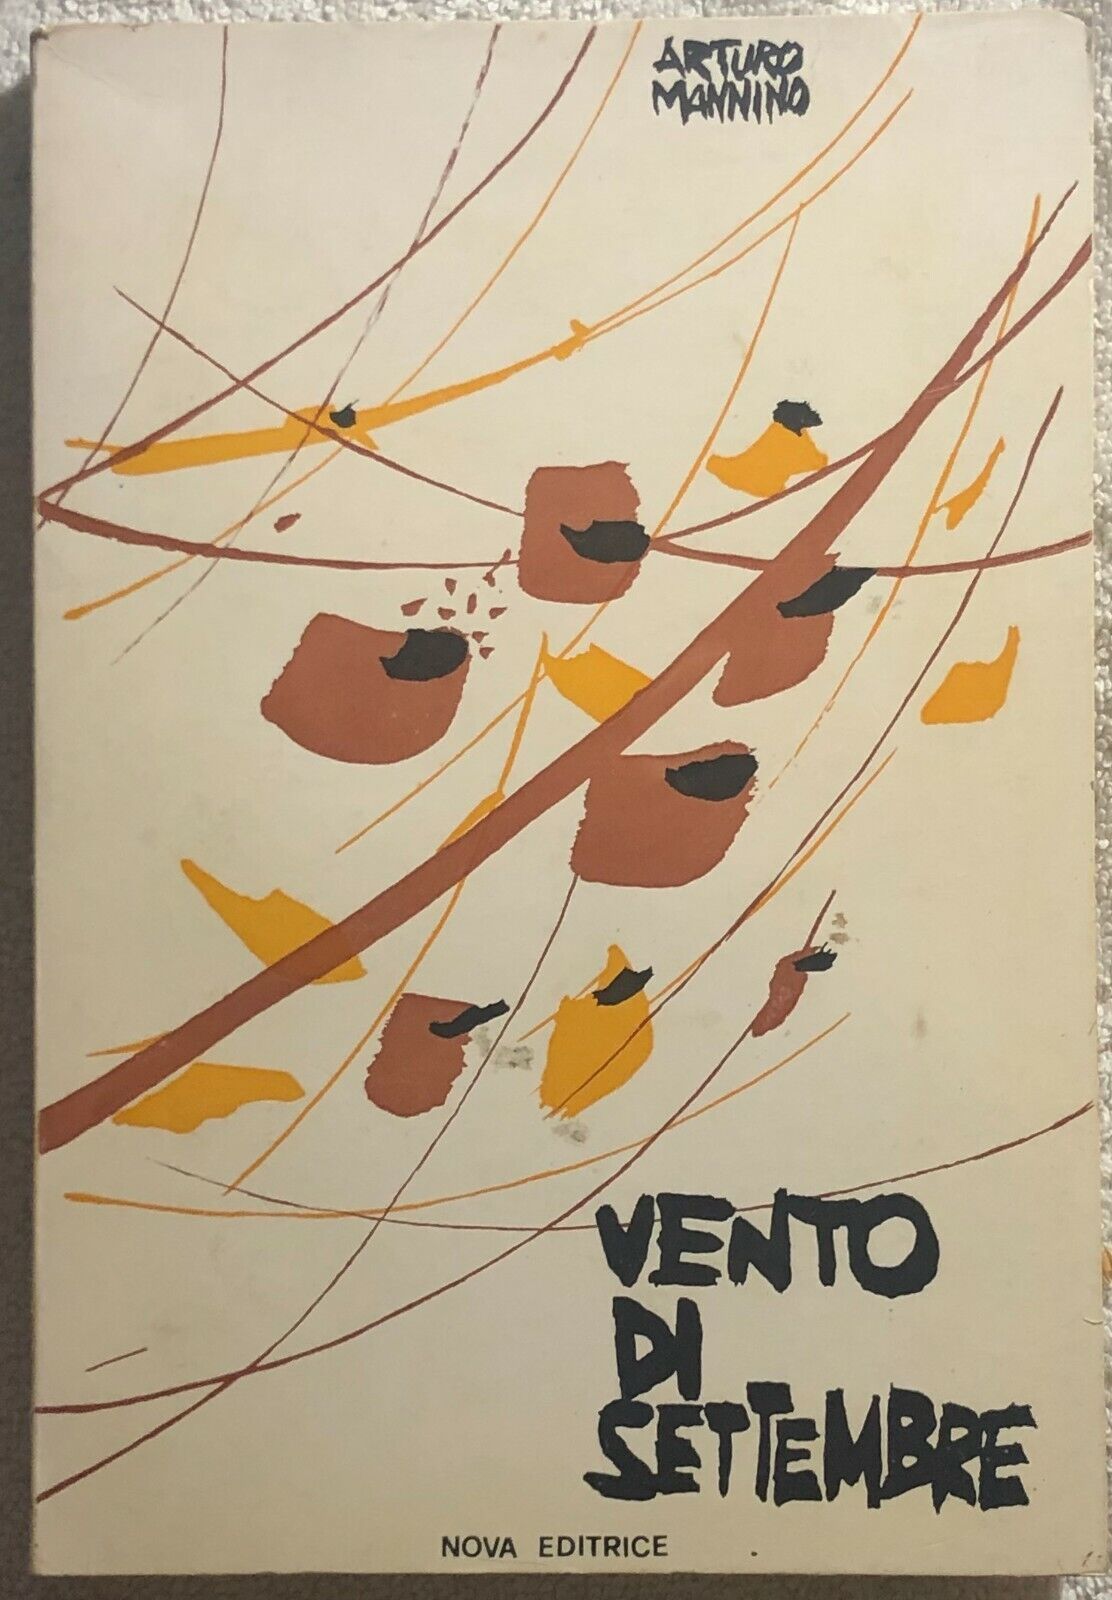 Vento di settembre di Arturo Mannino,  1973,  Nova Editrice